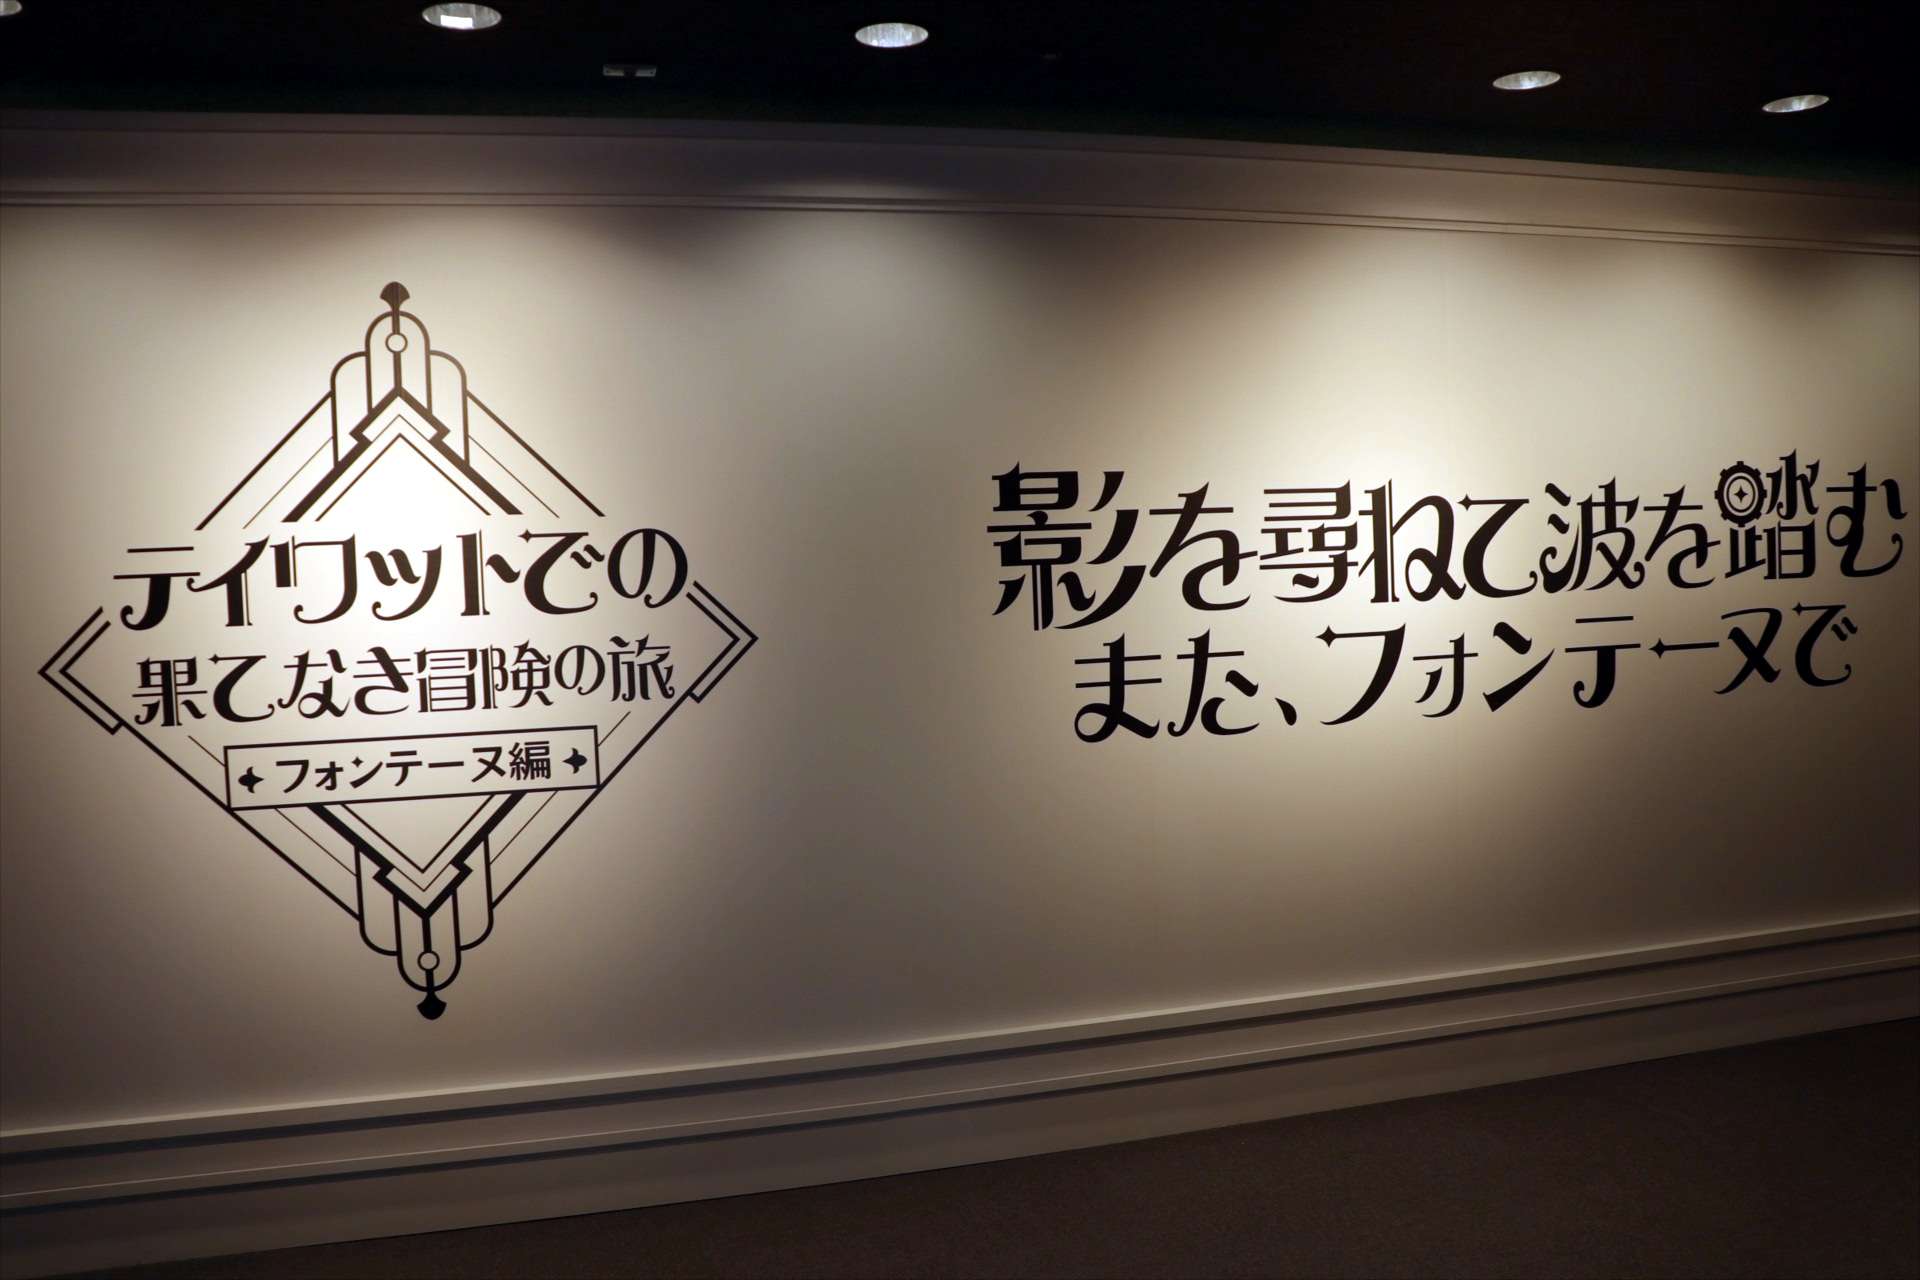 《原神》游戏艺术展览会东京开幕 精彩资料探馆预览